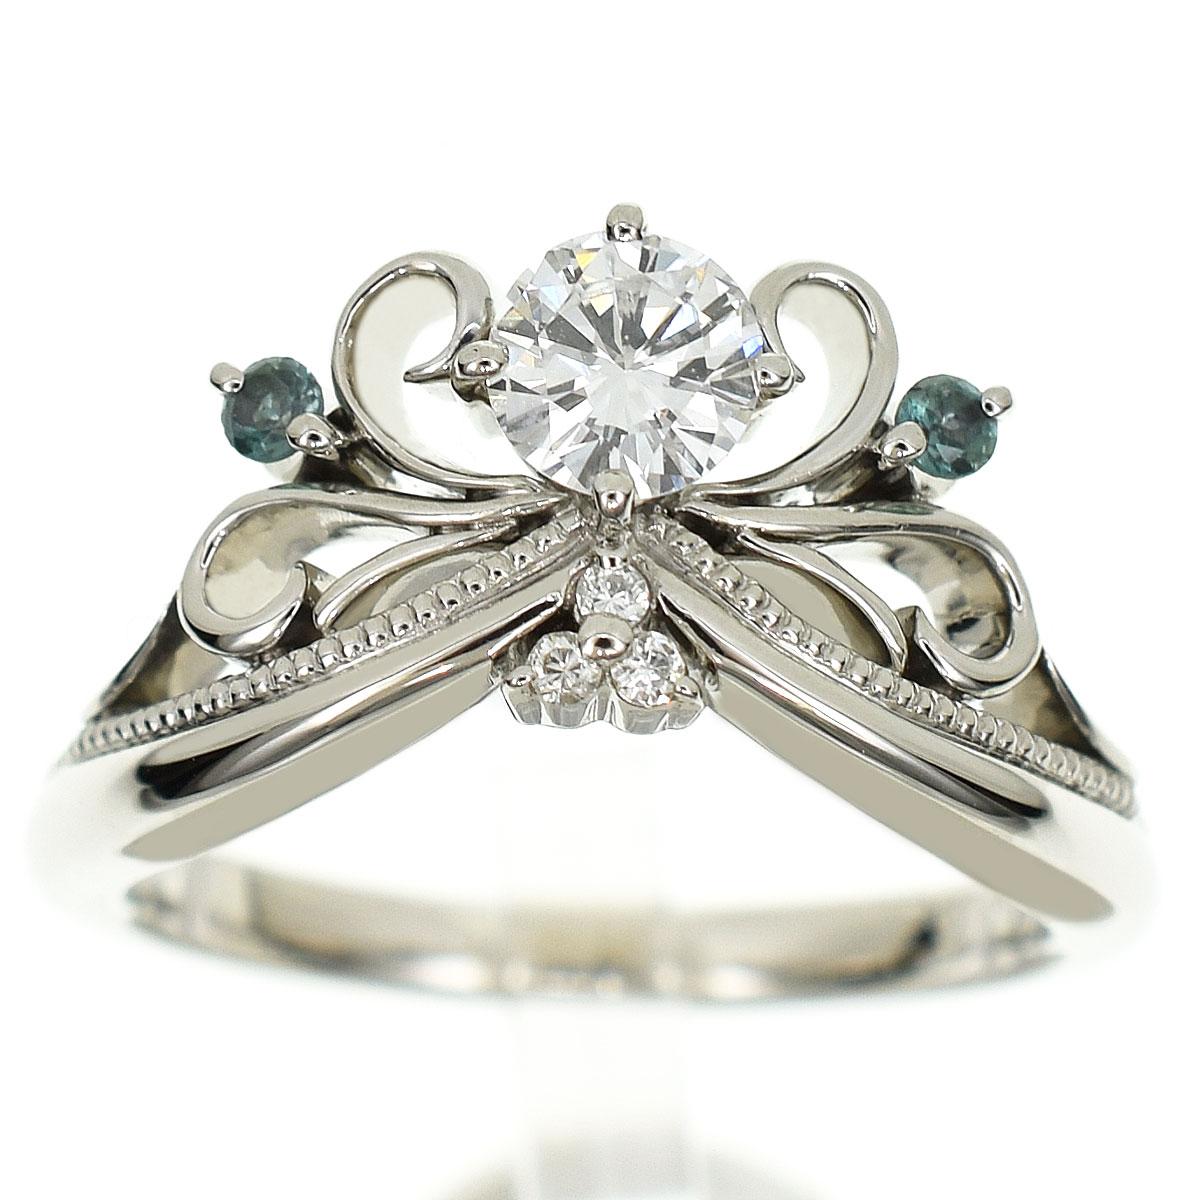 Marke: K.uno
Name: Prinzessin Tiara Diamant Ring
Material:1P Diamant (0,30ct D-VS1-GD), 3P seitlicher Diamant (D0,03ct), 2P Alexandrit, Pt900 Platin
Gewicht:6.1g（Ungefähr）
Ringgröße (Zoll): Britisch & Australisch: I 1/2  /   US & Kanada:4.5 / 